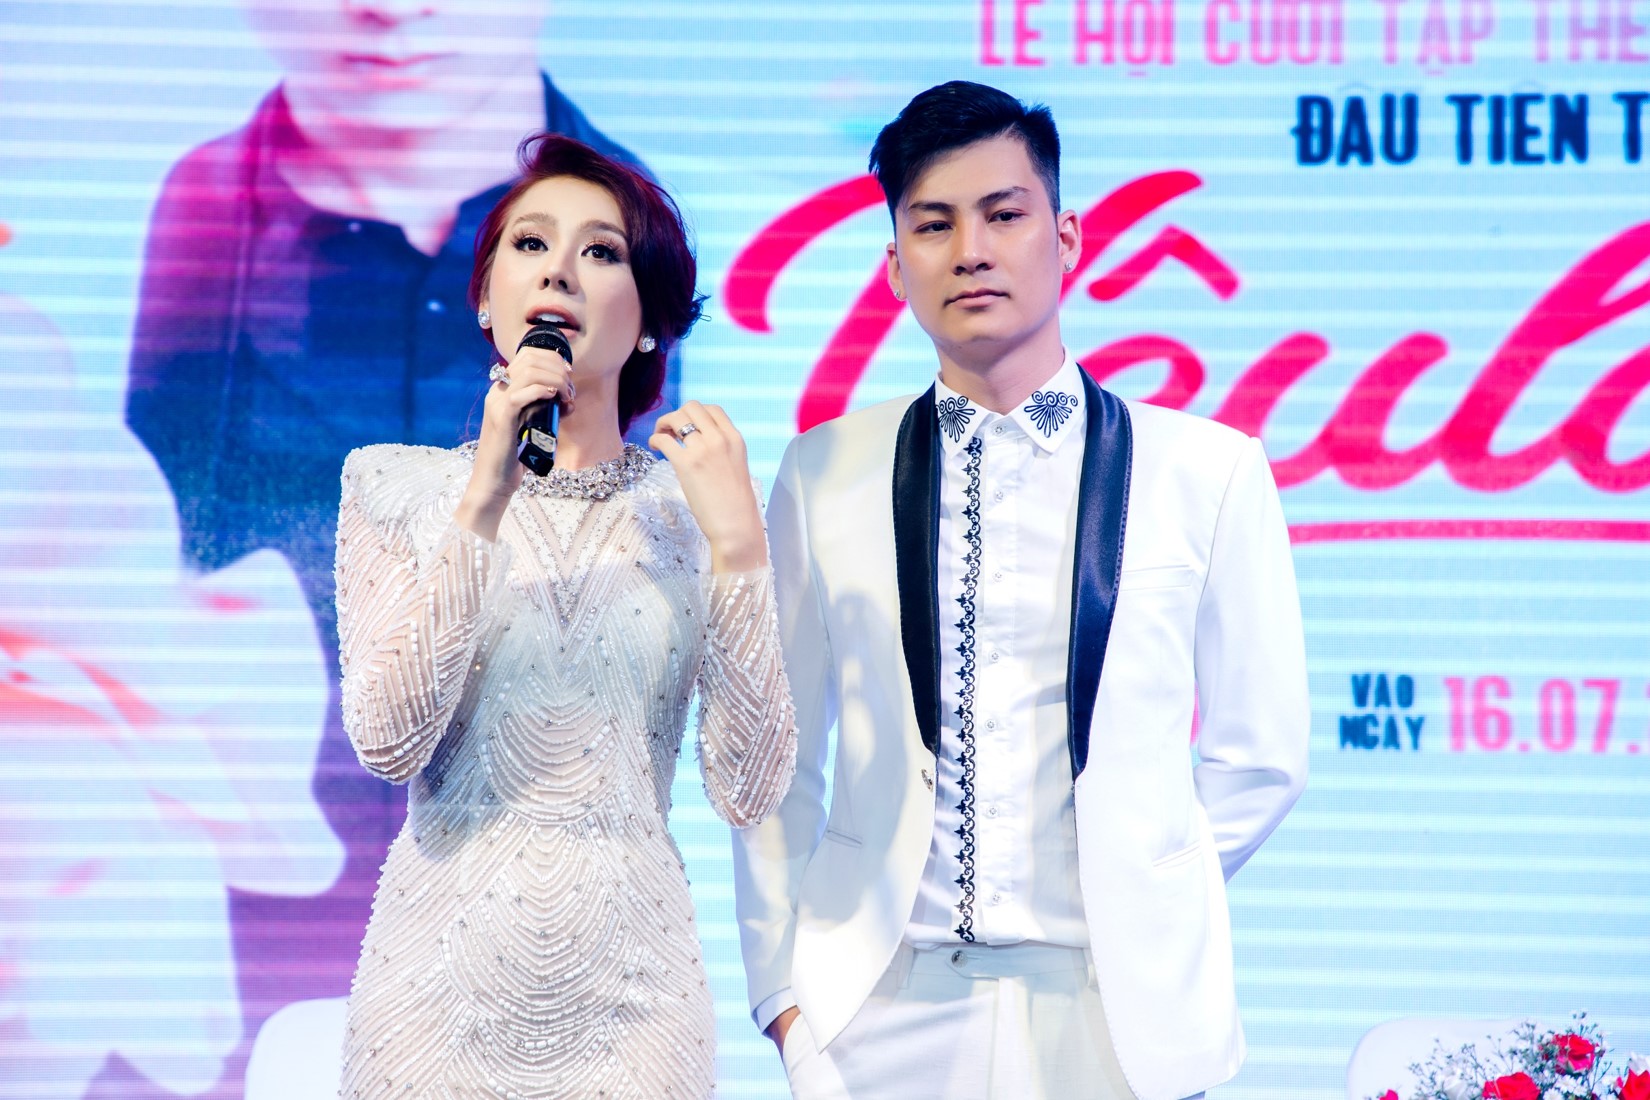 Lâm Khánh Chi và chồng là người trực tiếp tổ chức "Lễ hội cưới".